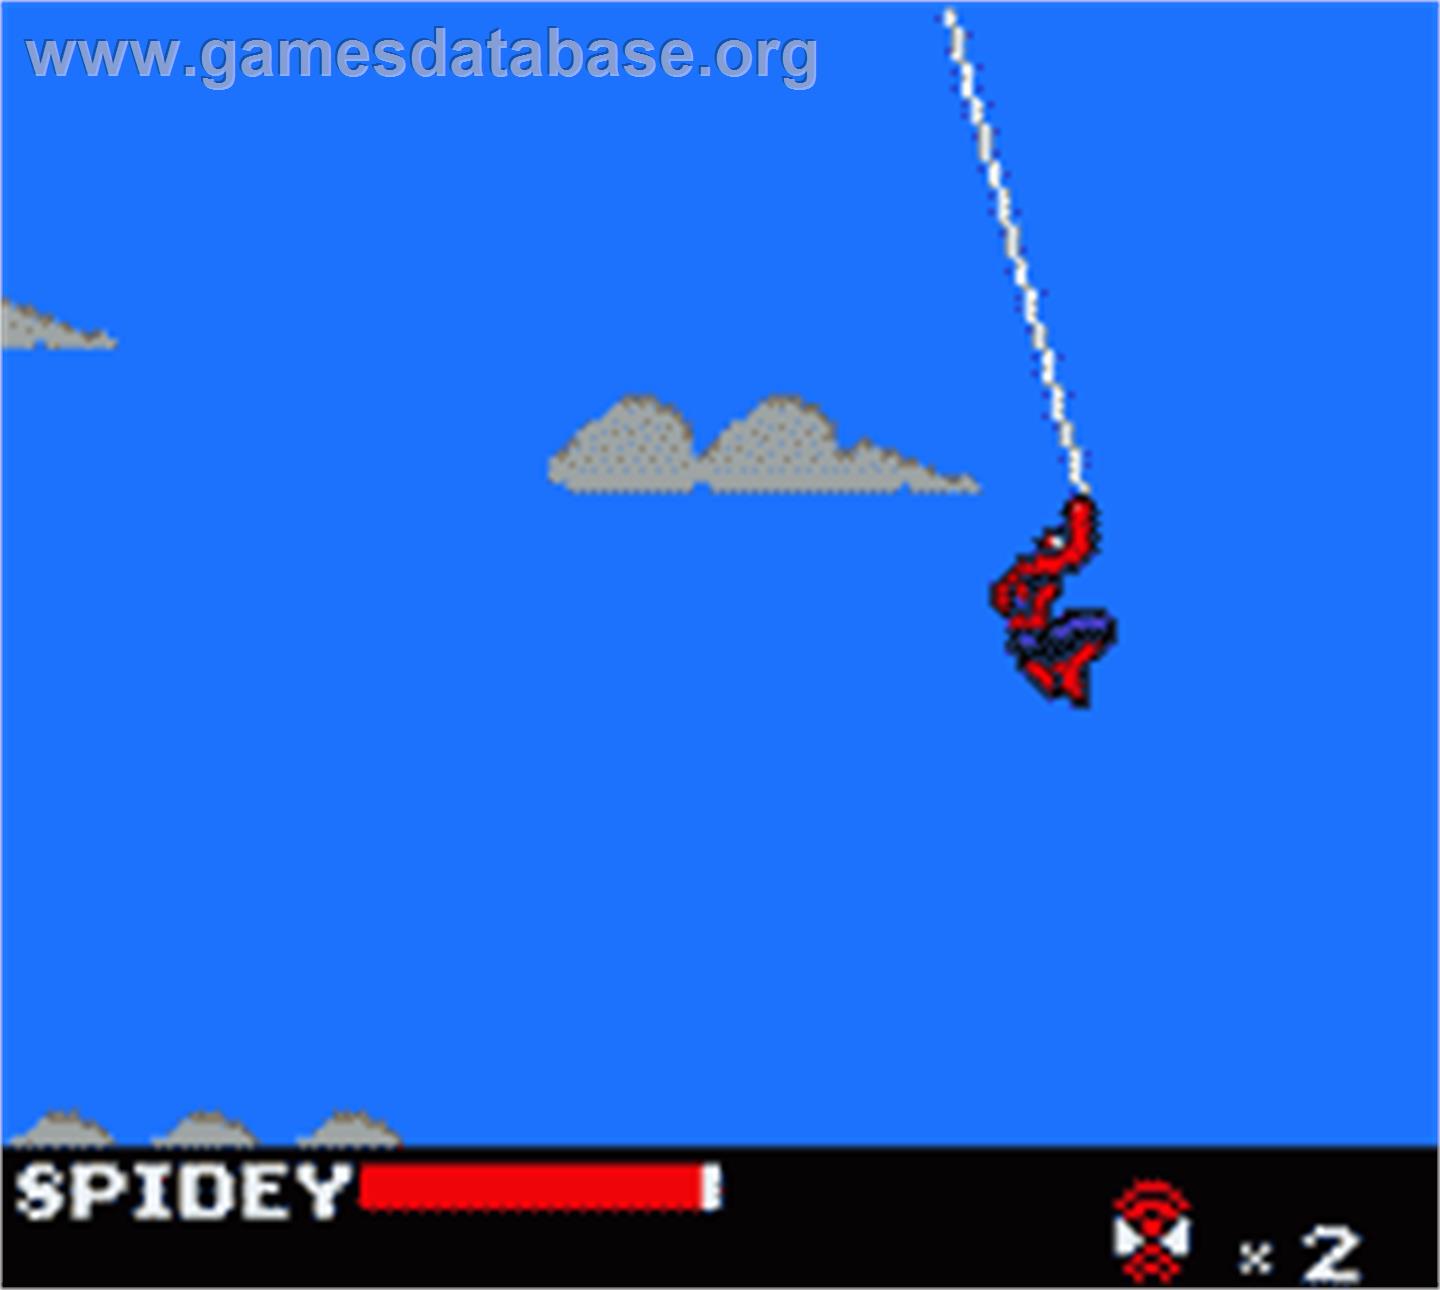 Spider-Man - Nintendo Game Boy Color - Artwork - In Game